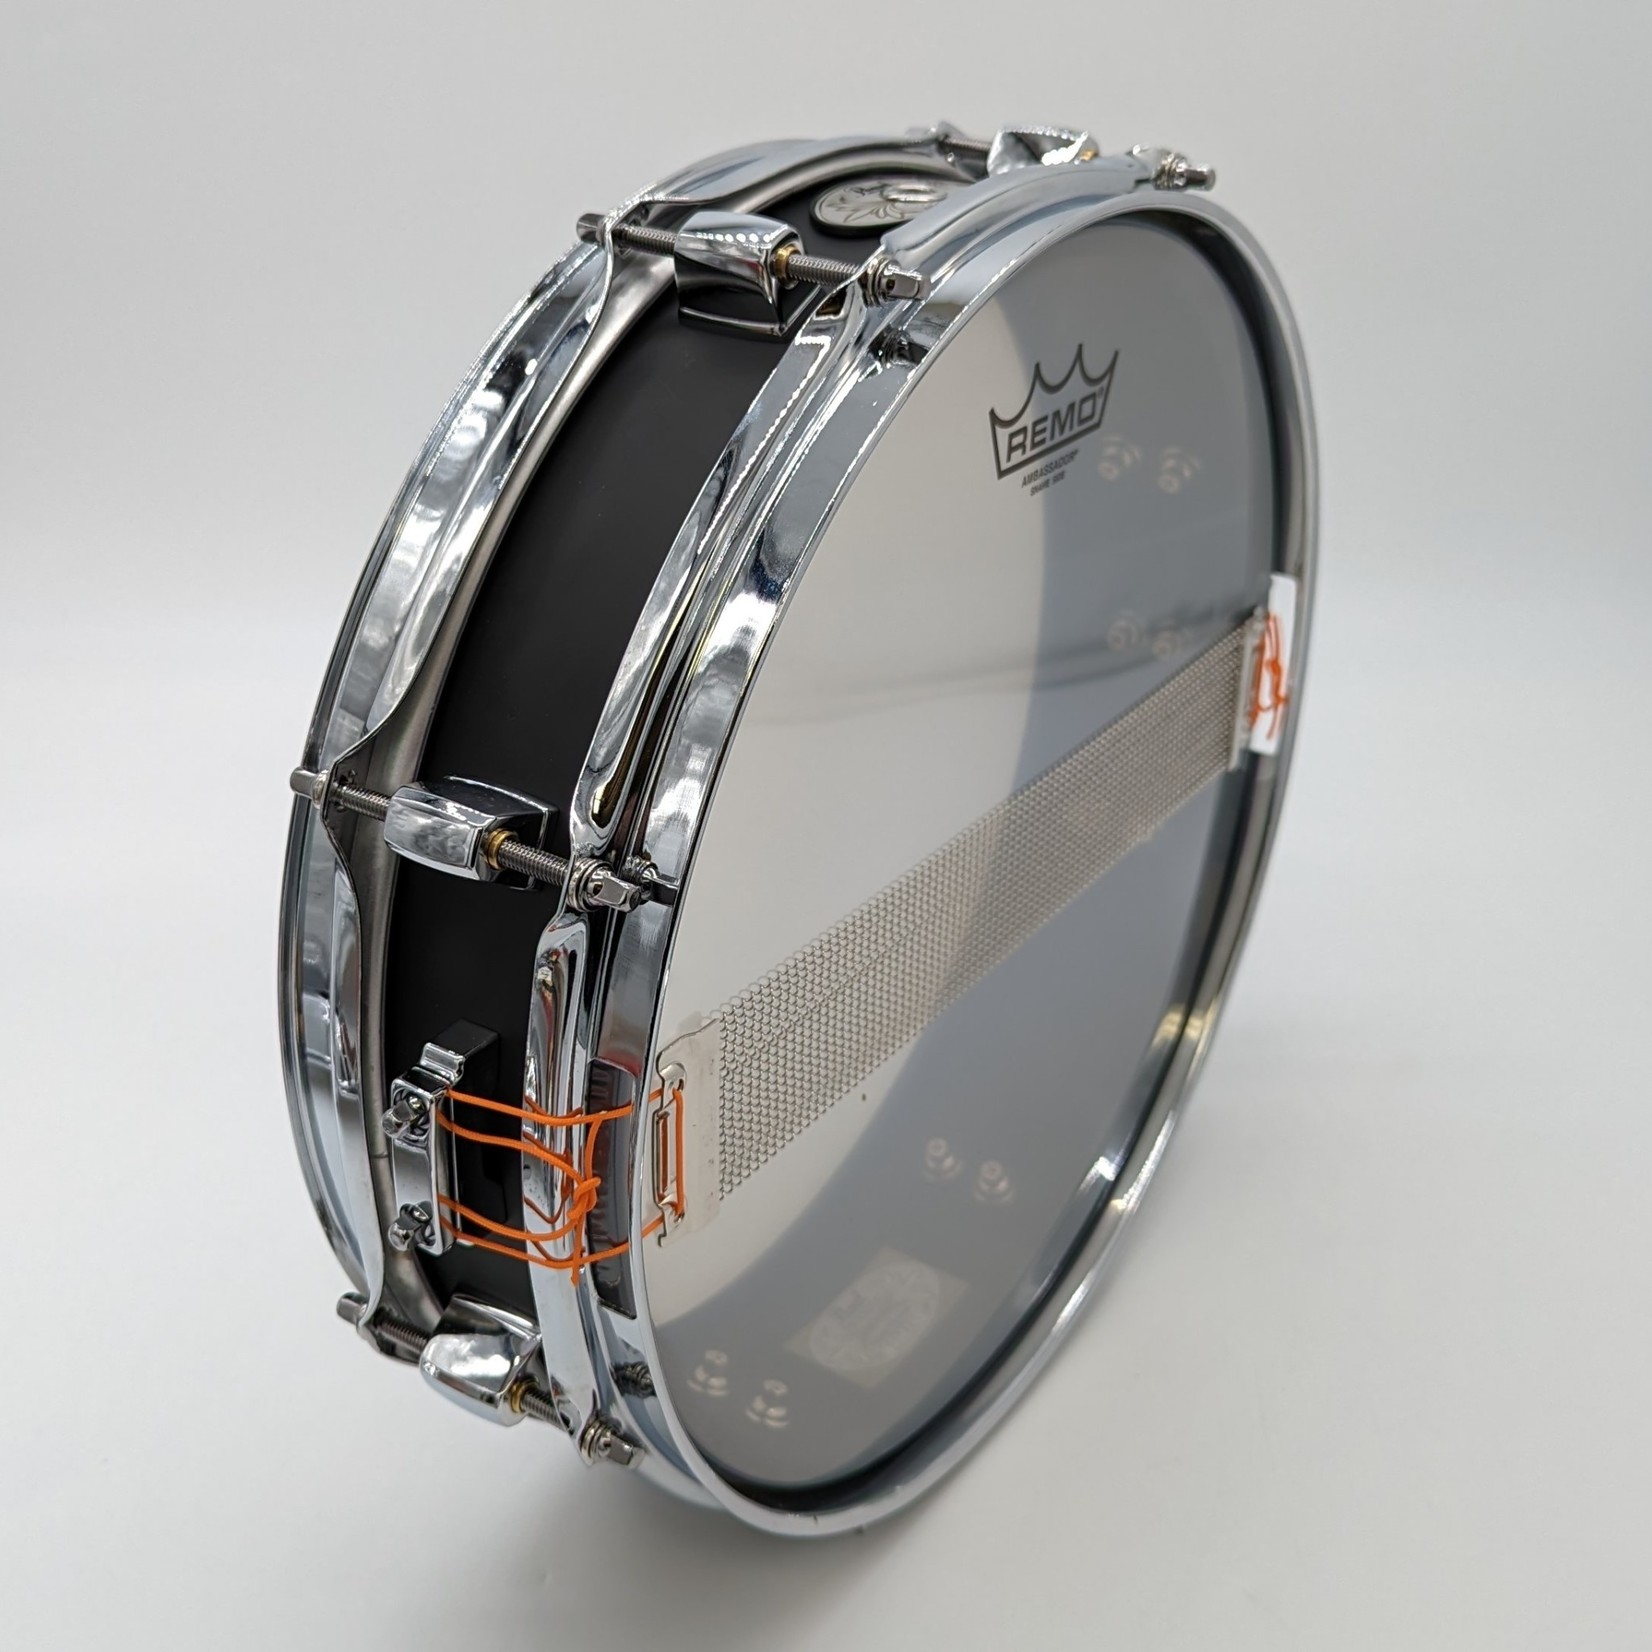 Pearl Like-New Pearl Black Steel 13x3" Snare Drum